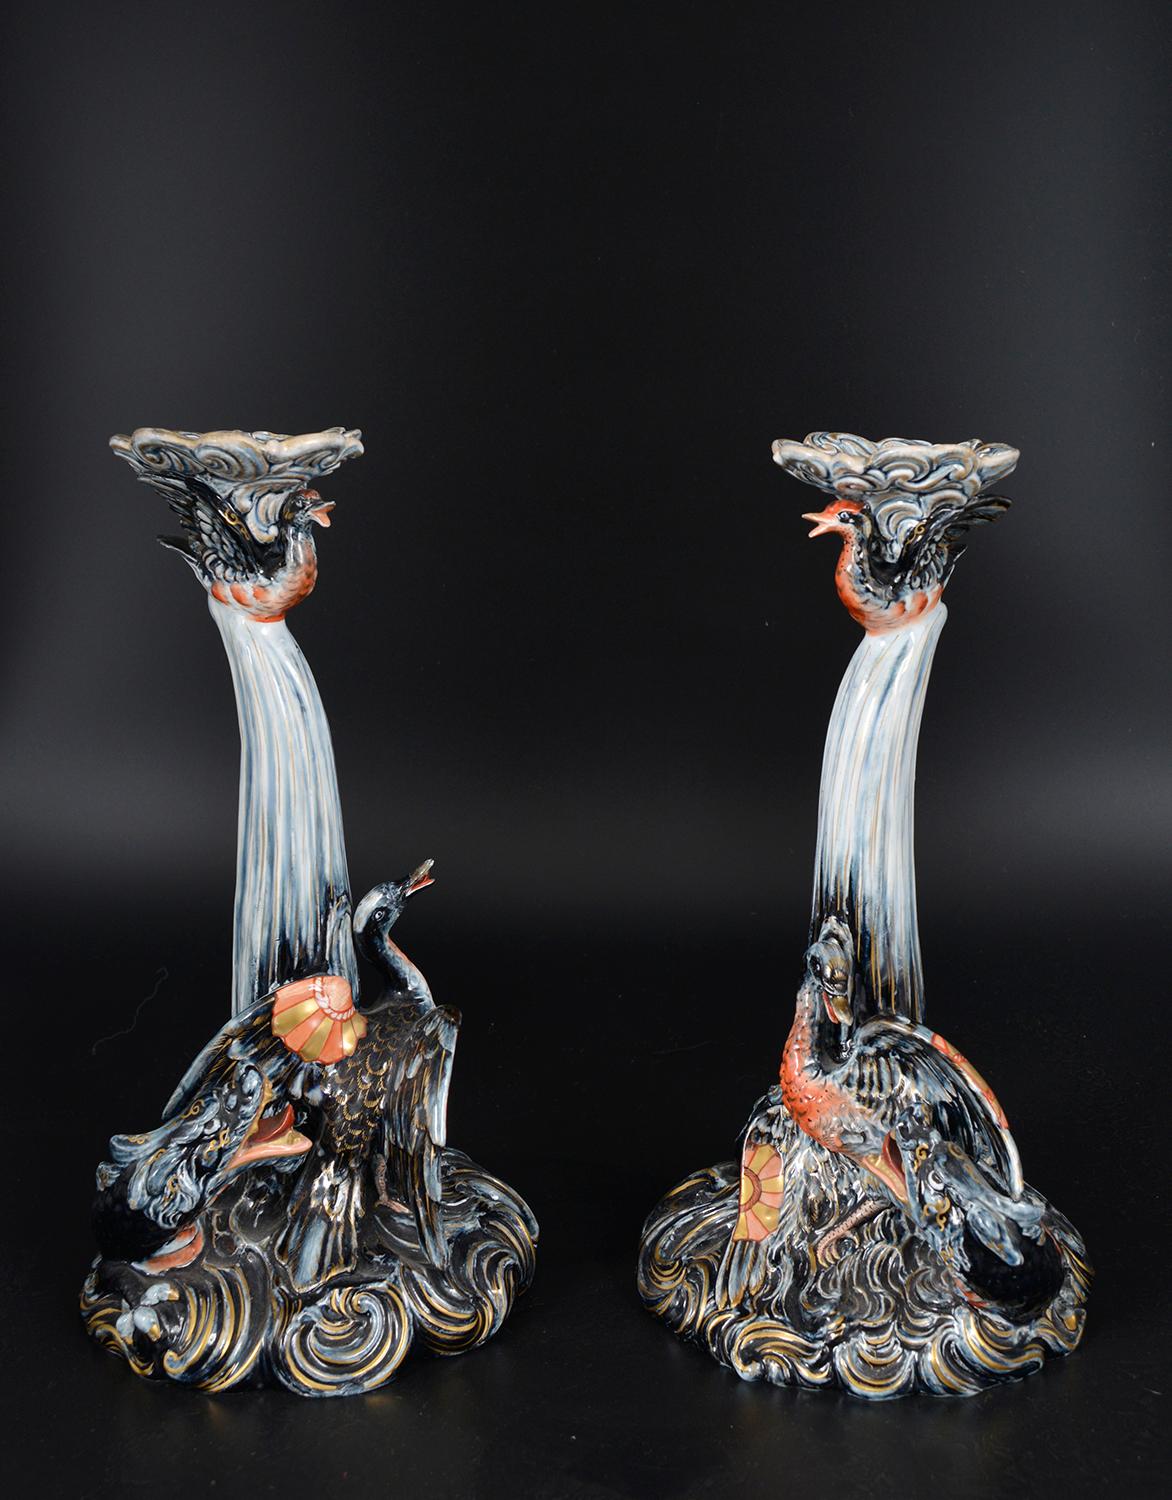 Ein außergewöhnliches Paar hochdekorativer französischer glasierter Keramik-Kerzenhalter von Keller & Guérin - die Sockel in Form eines Seedrachens, der einen Vogel verfolgt. Japanische Signatur Keller Et Guerin, monogrammiert auf beiden Sockeln.